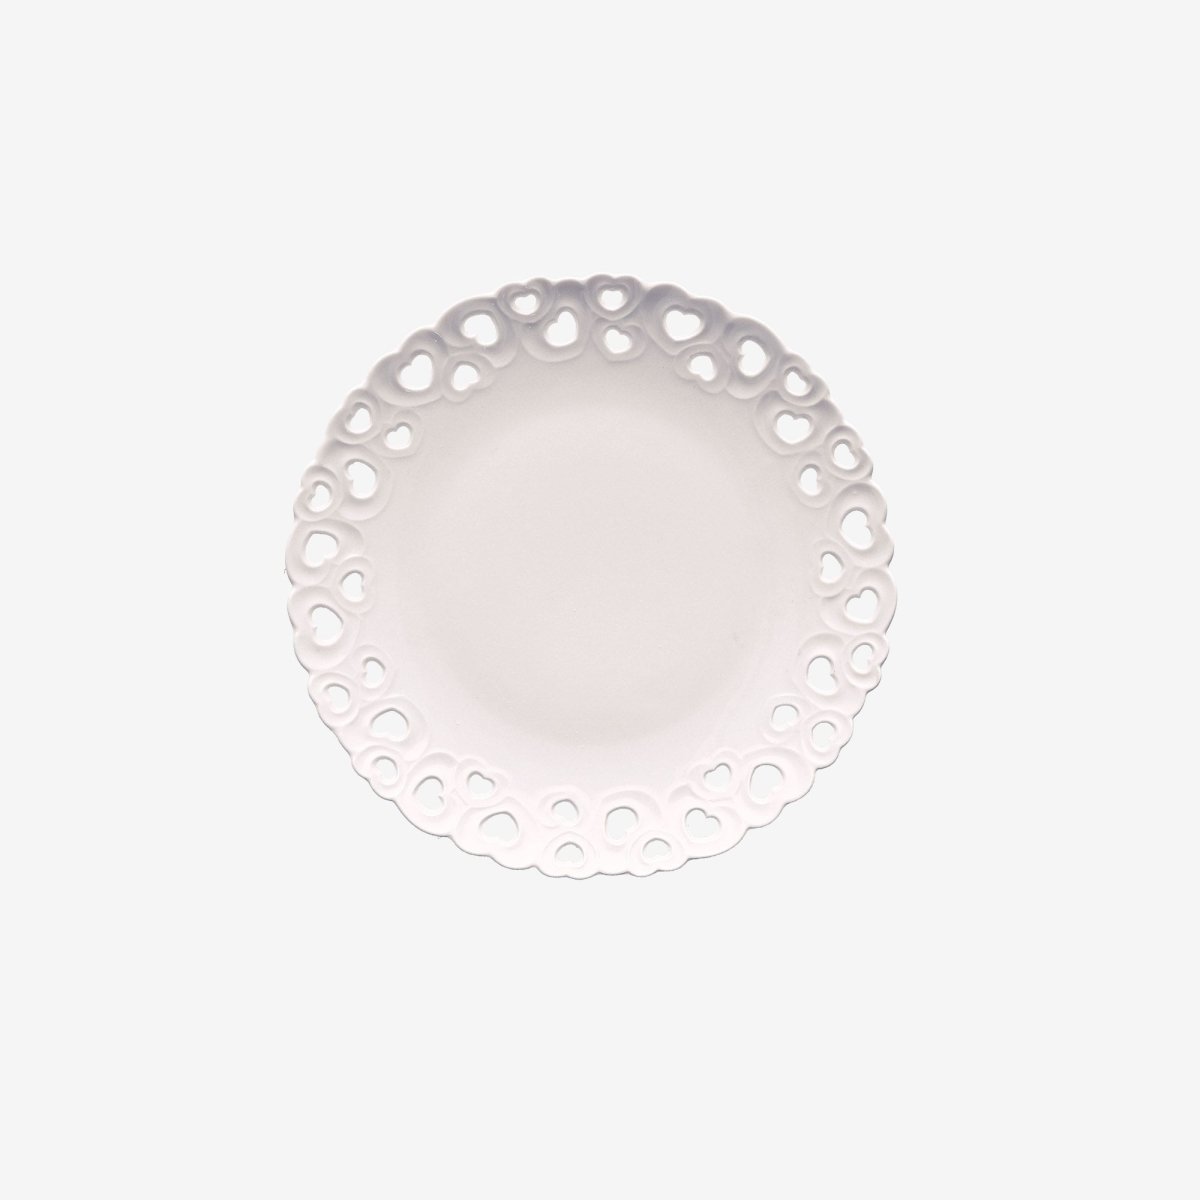 La porcellana bianca - piatto traforato | rohome